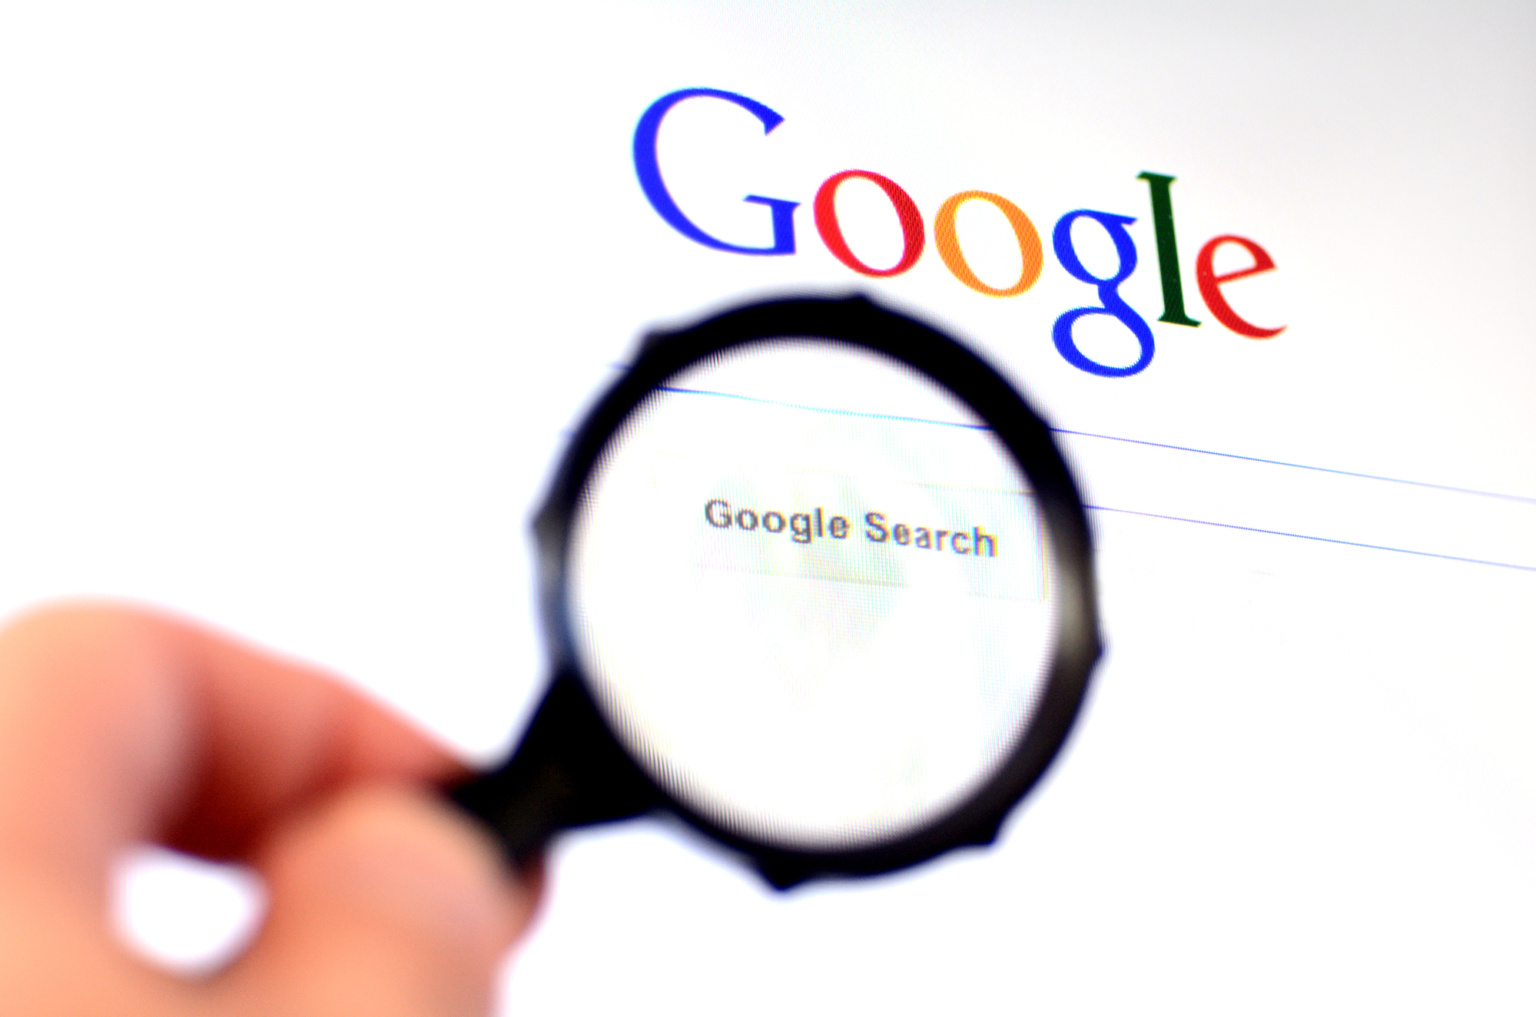 Беспощадное SEO: CNET удаляет тысячи старых статей, чтобы улучшить ранжирование в поиске Google